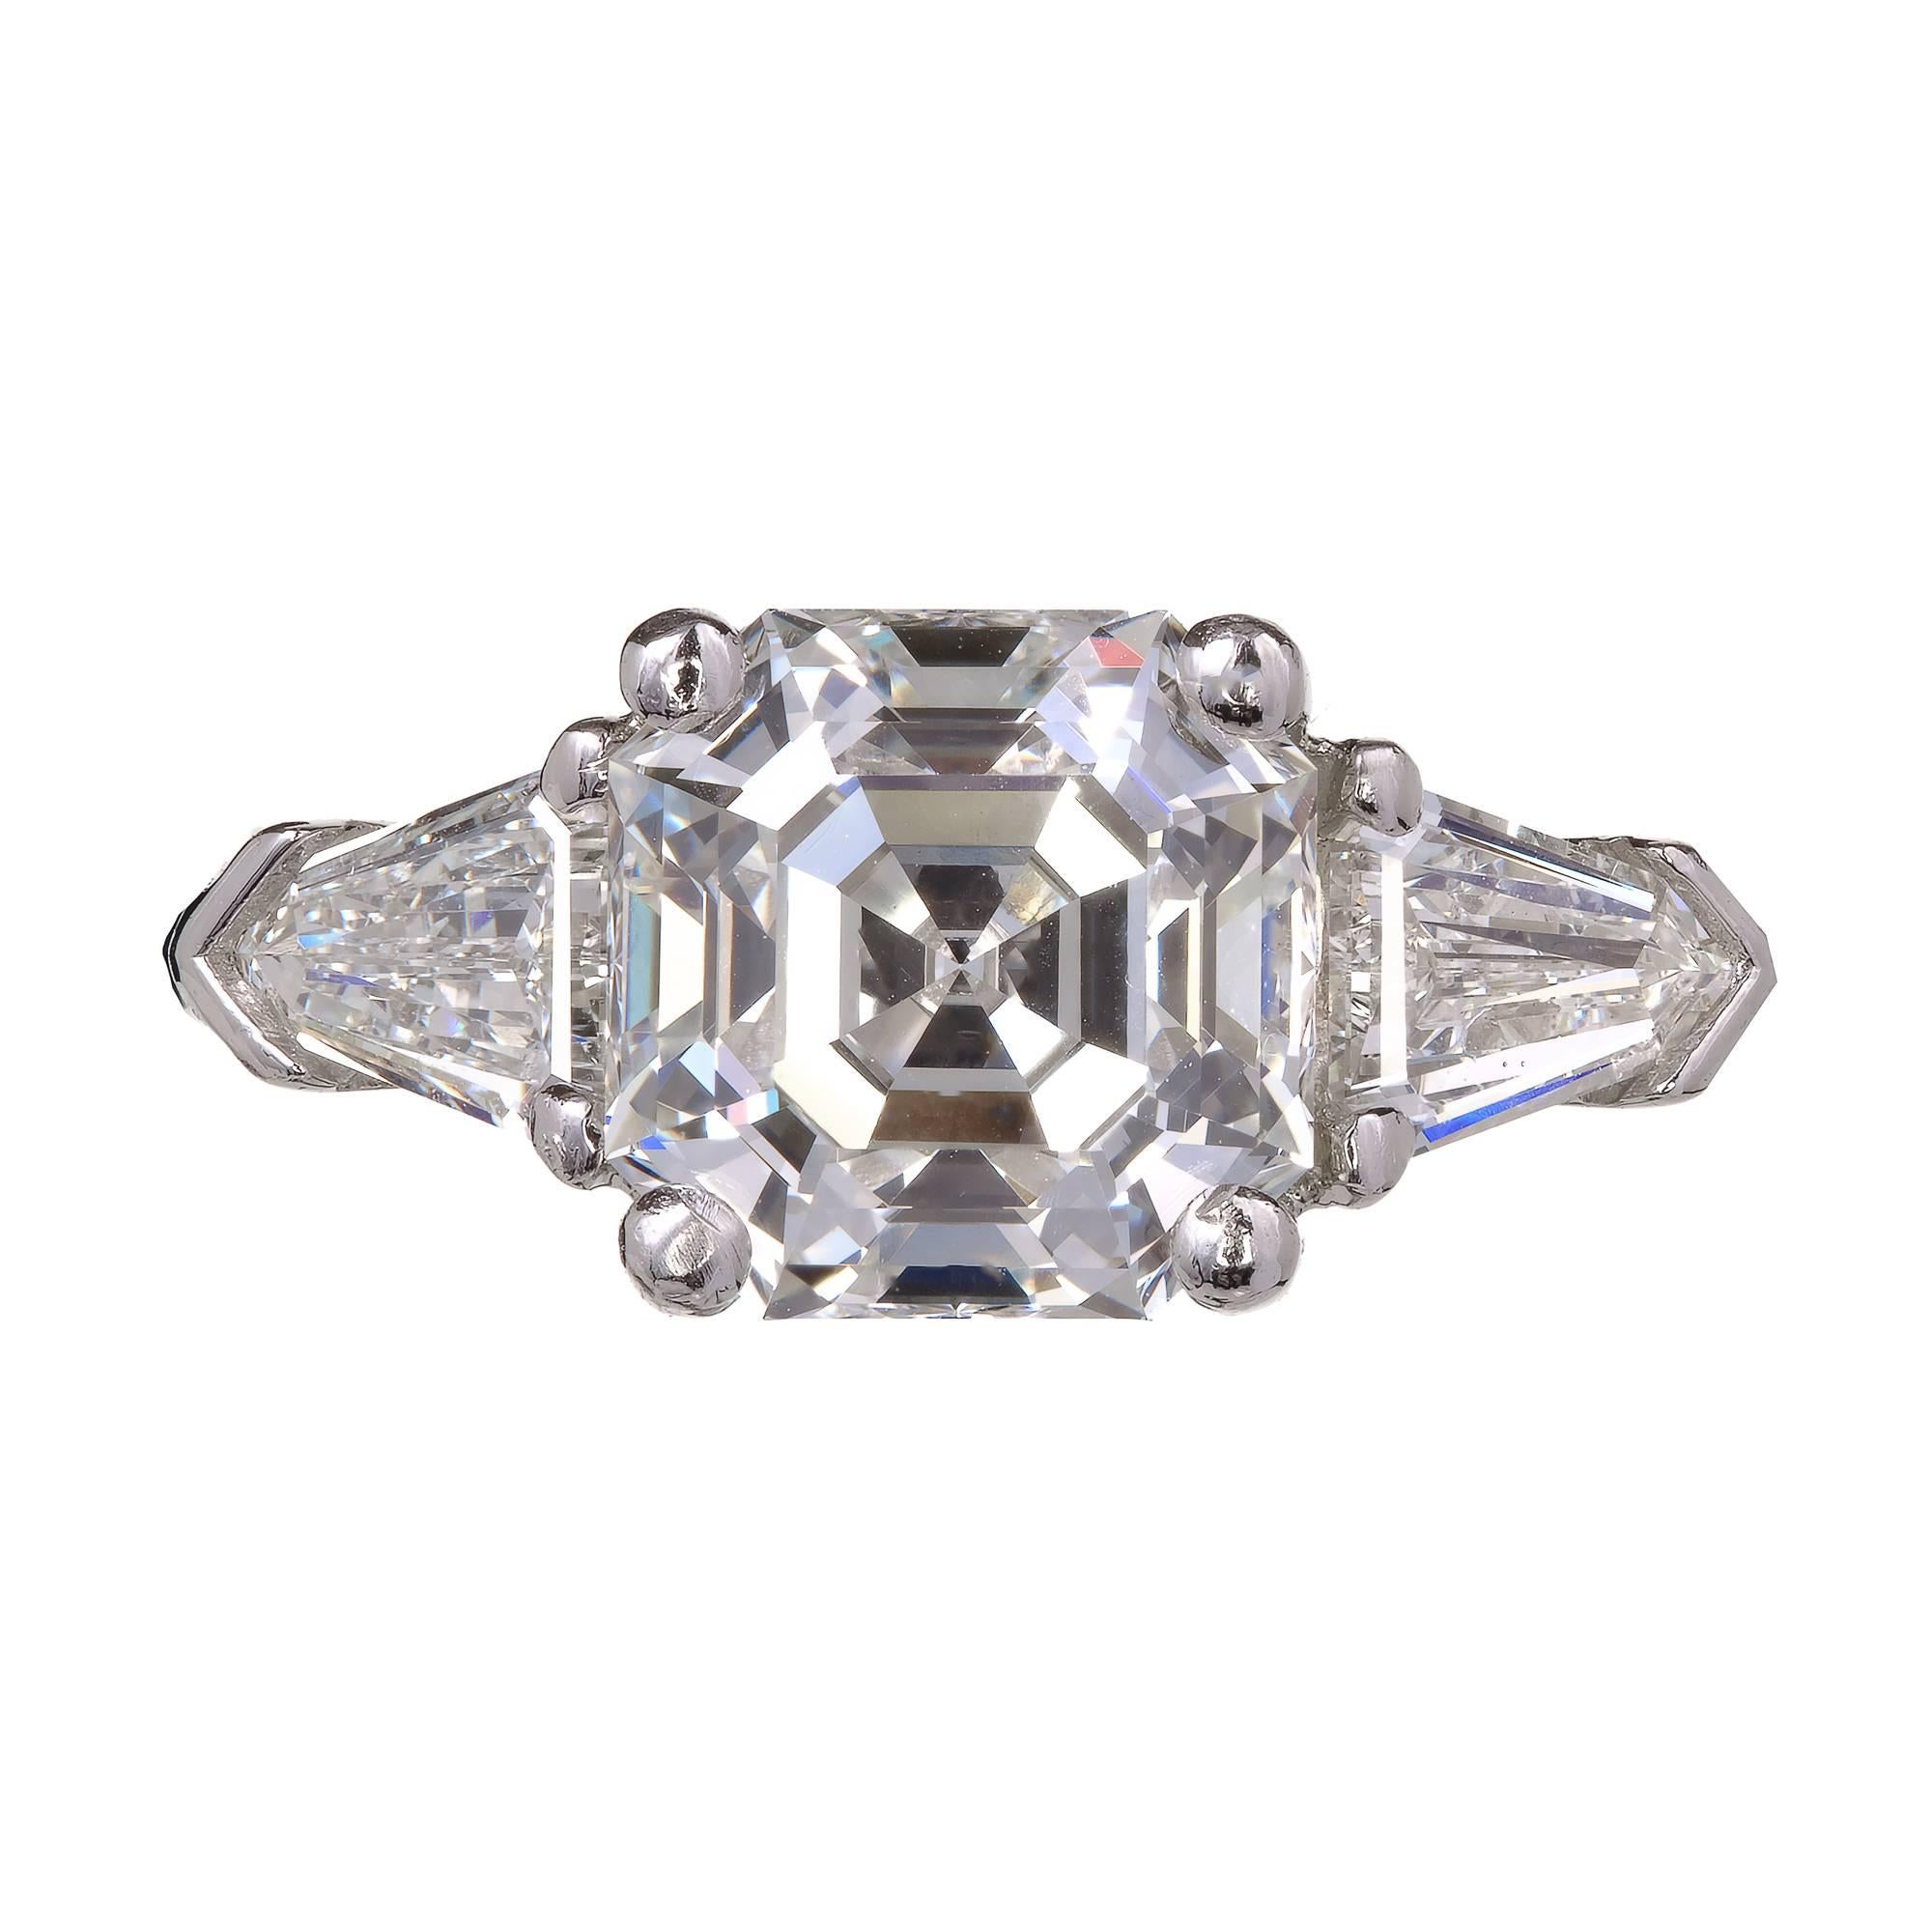 Peter Suchy Asscher Diamond Engagement Ring Platinum Bullet Cut Side Diamond